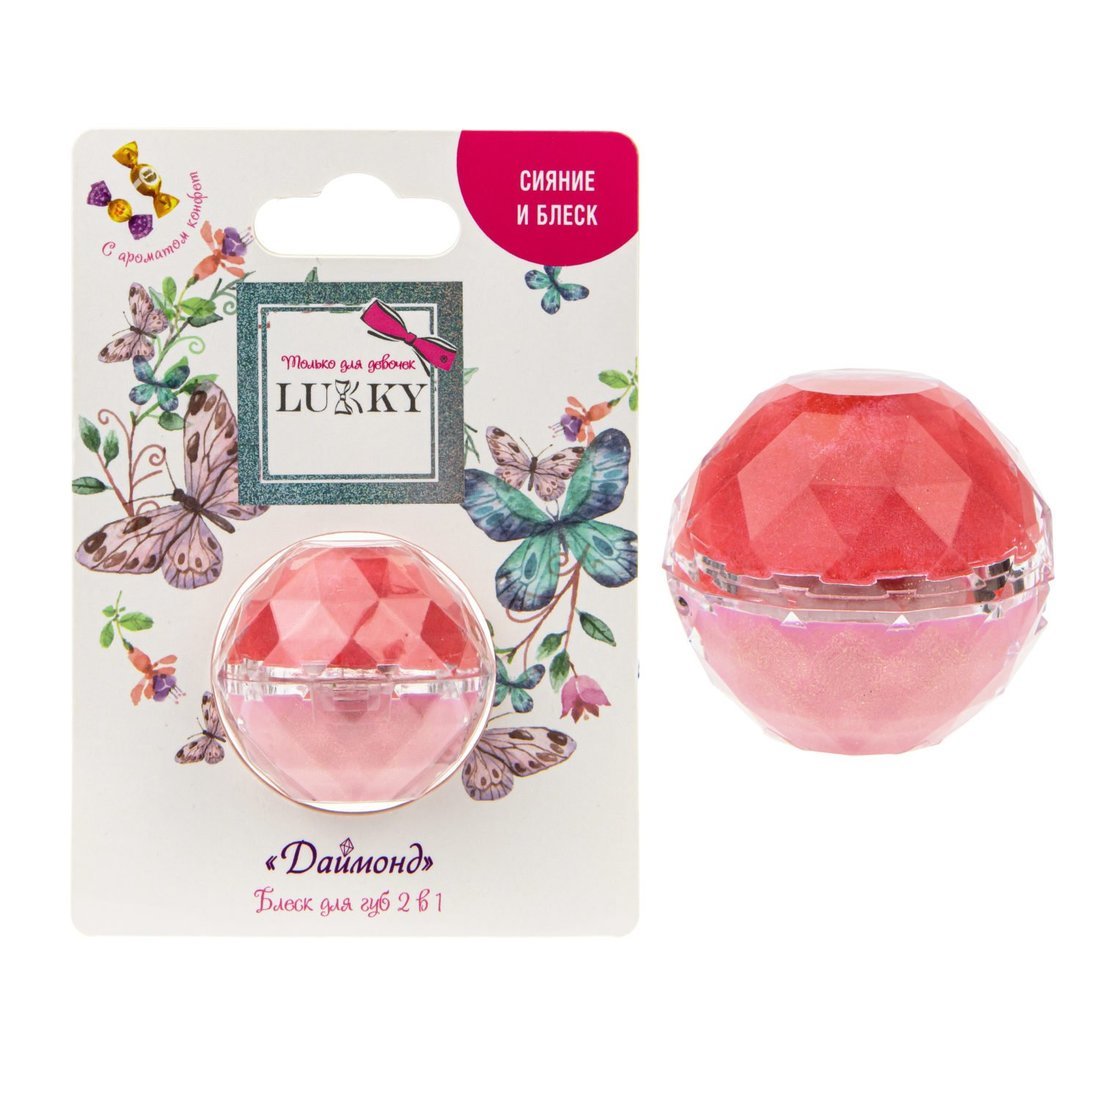 Блеск для губ Даймонд 2 в 1, с ароматом конфет, цвет конфетно-розовый/бледно-розовый, 10 г